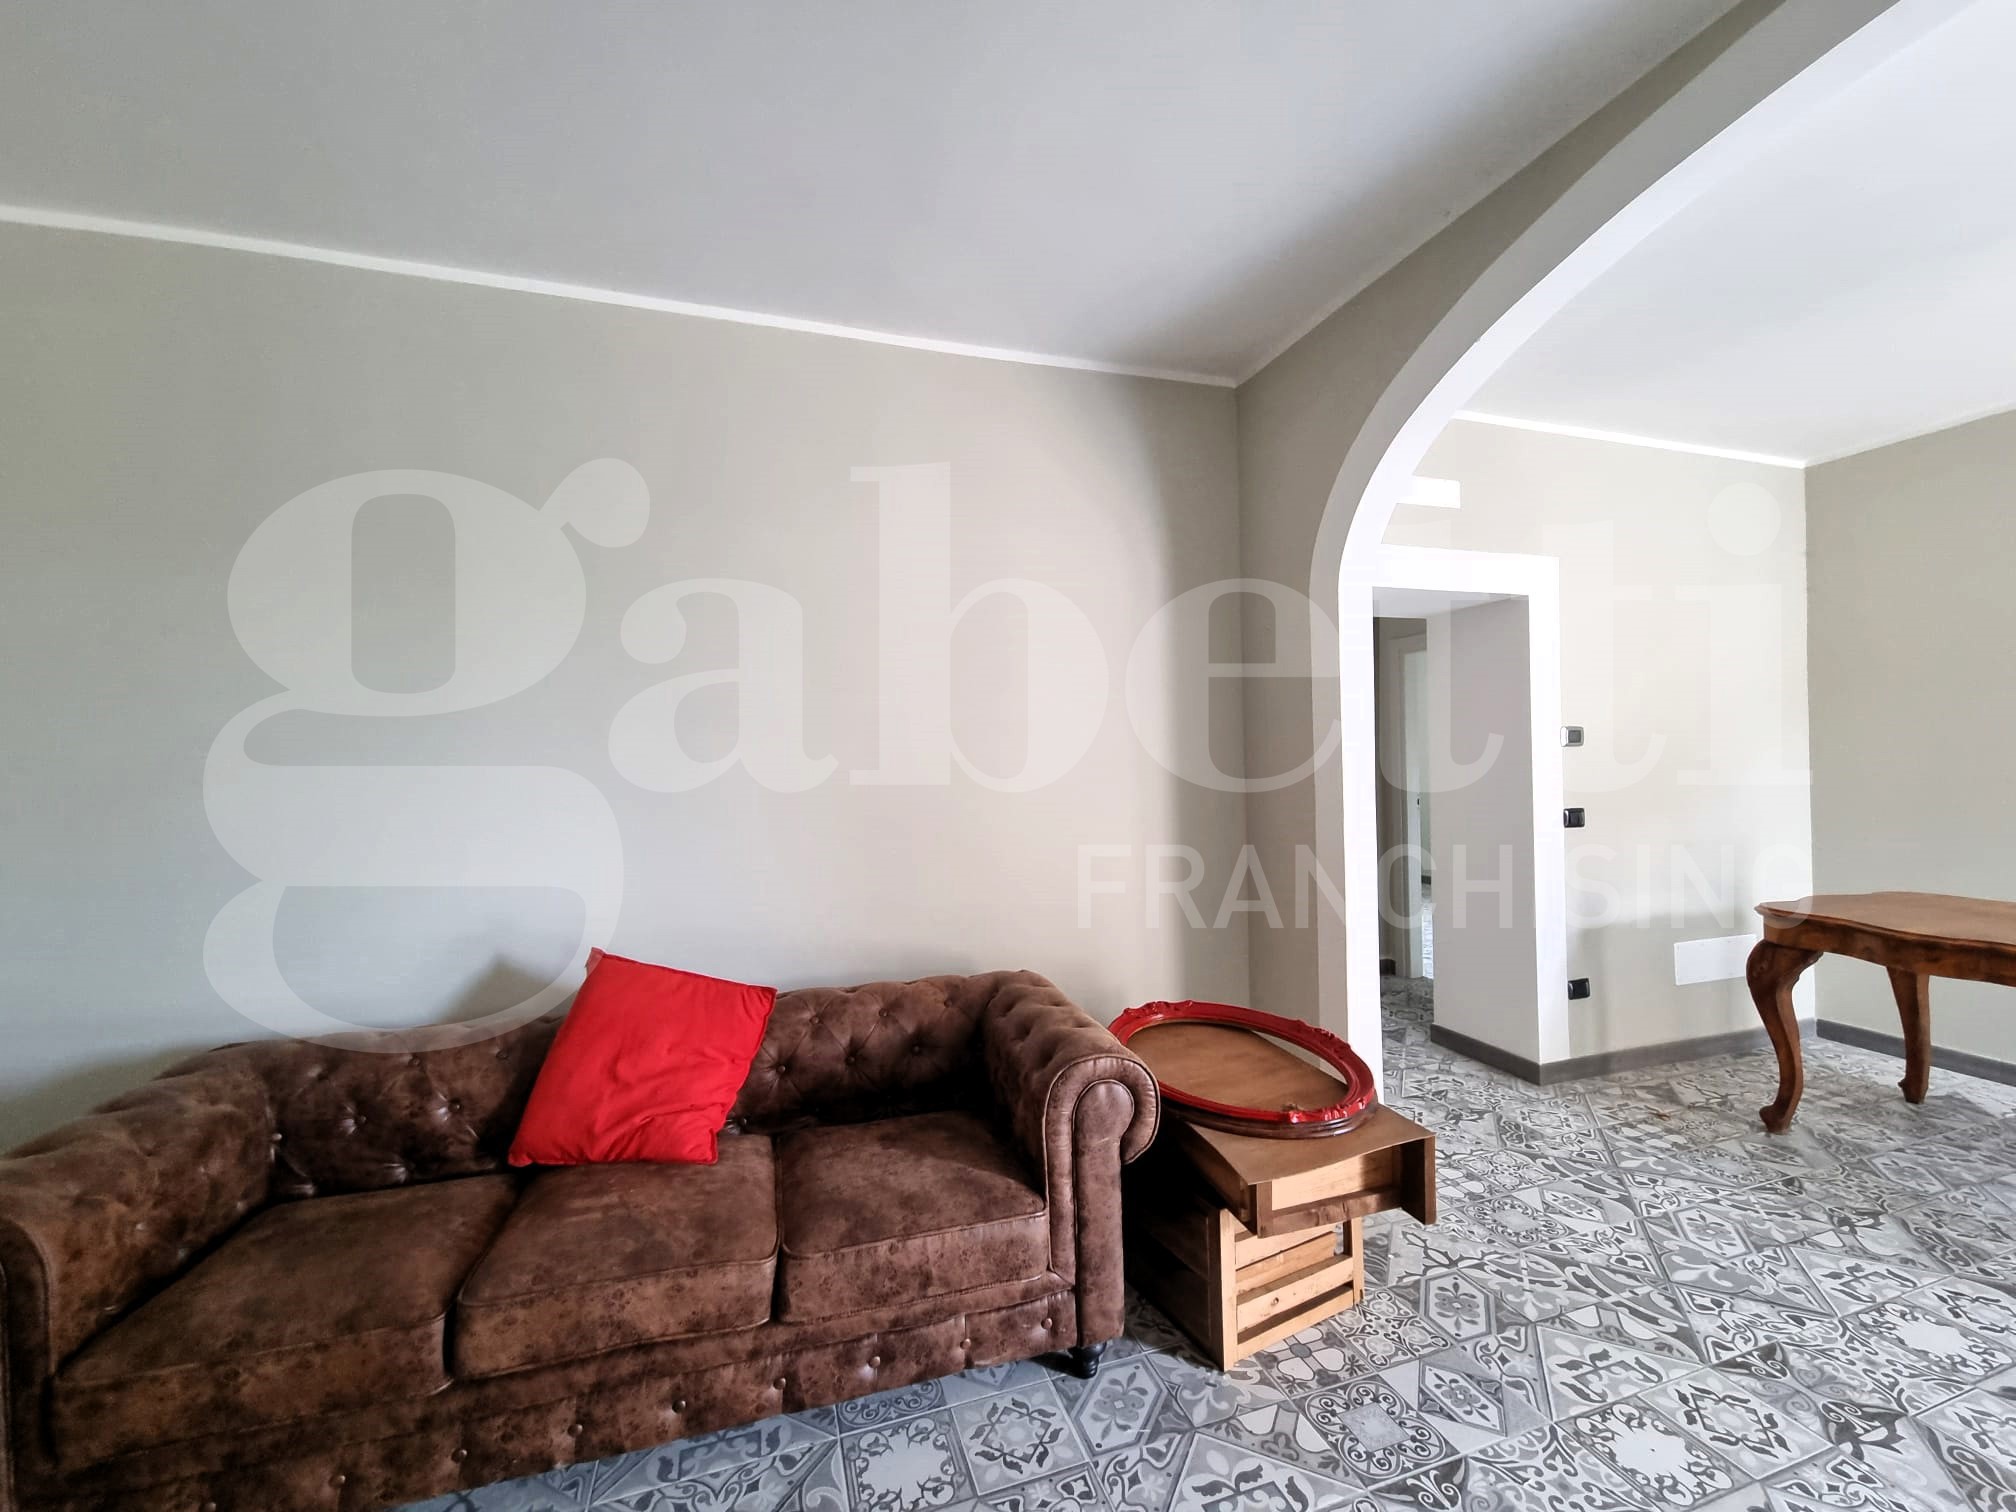 Appartamento di 90 mq in affitto - Cantalupo in Sabina